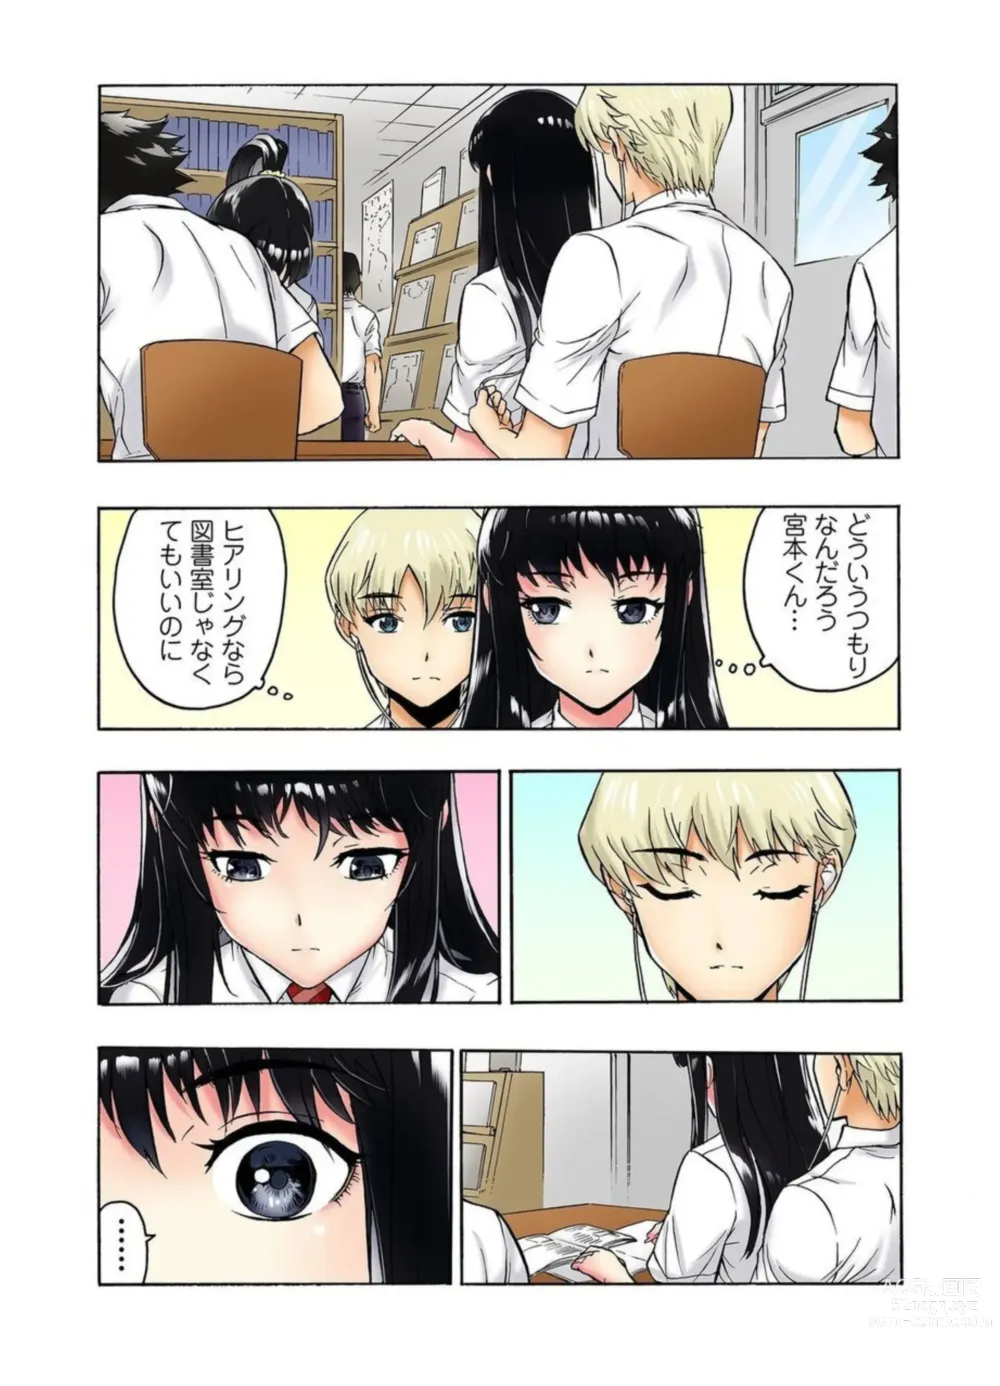 Page 42 of manga Tenkousei no Seki ga Ore no Hiza no Ue ni Kimatta no de Hame Temita Dai 2-bu 1-2